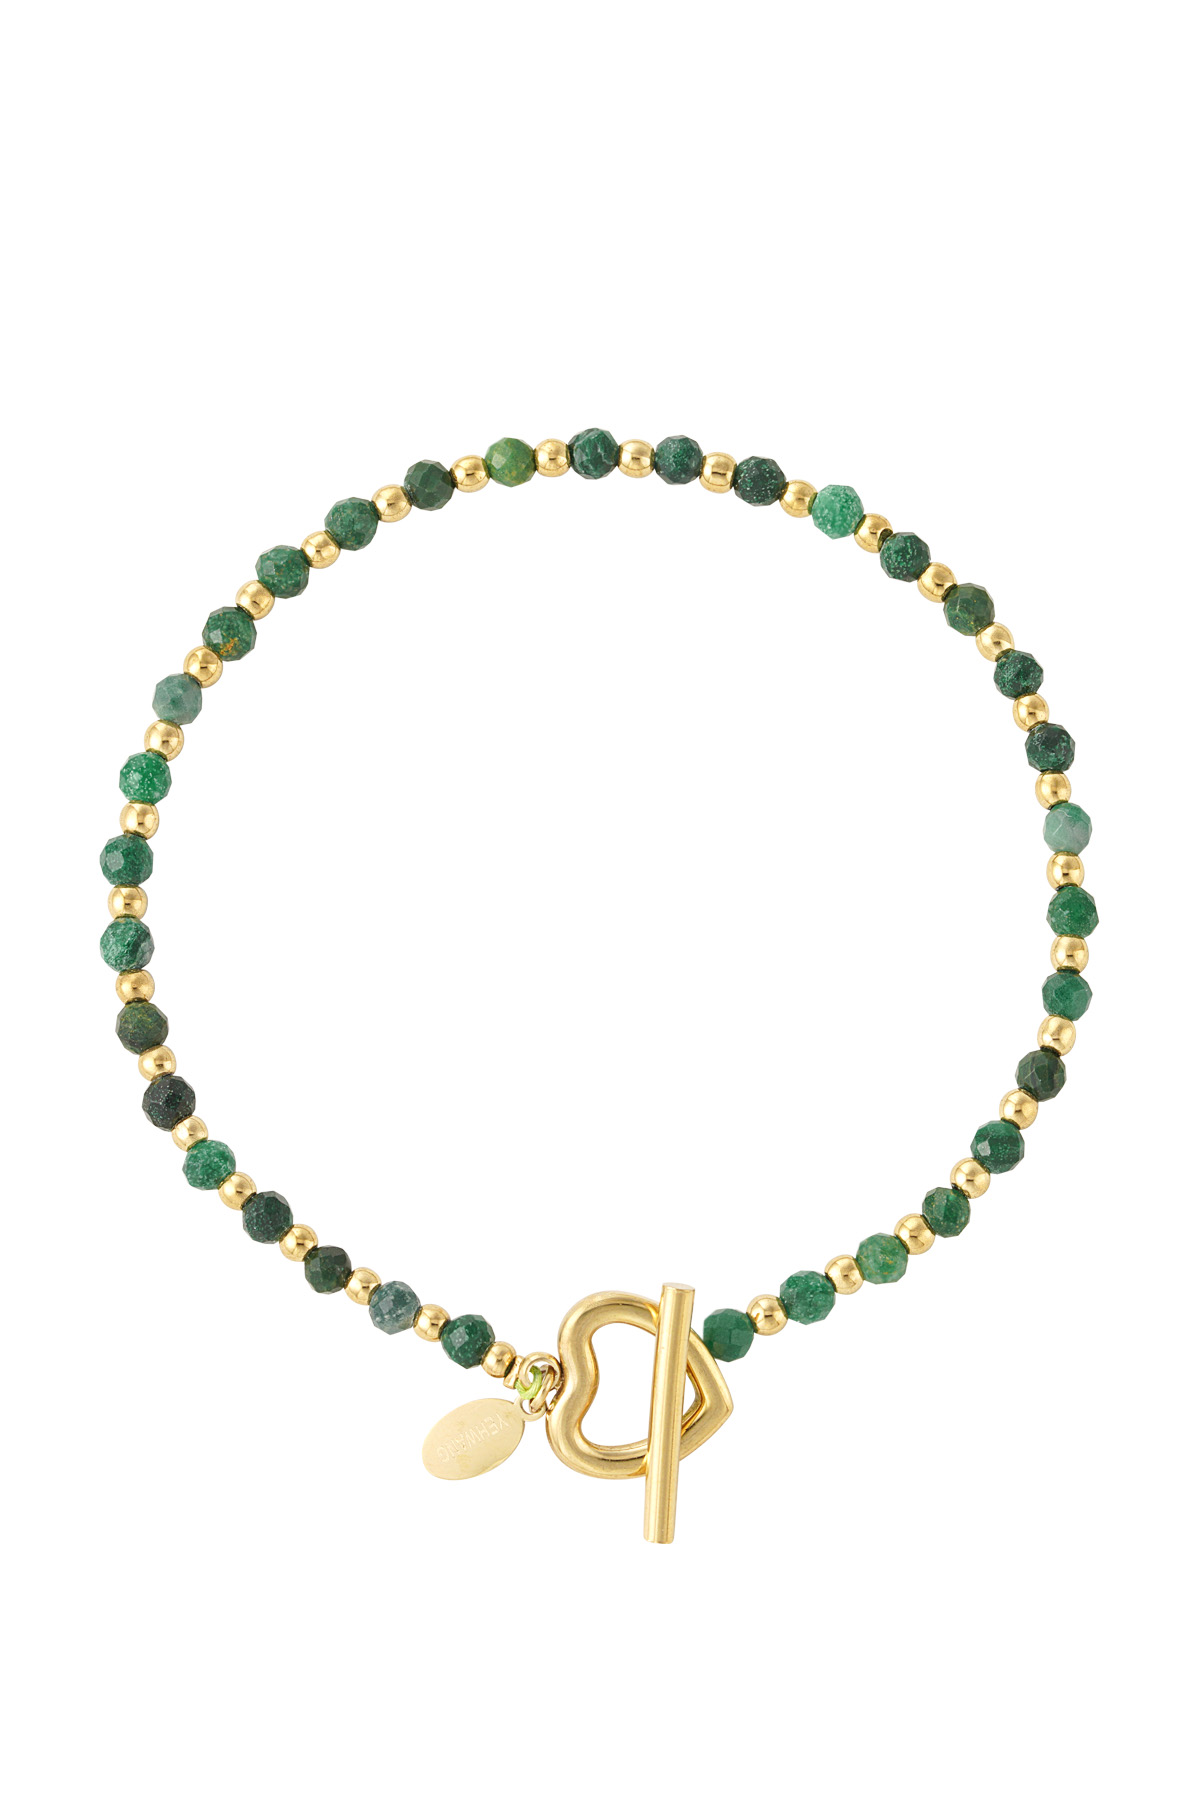 Beaded bracelet heart lock - green/gold Stainless Steel